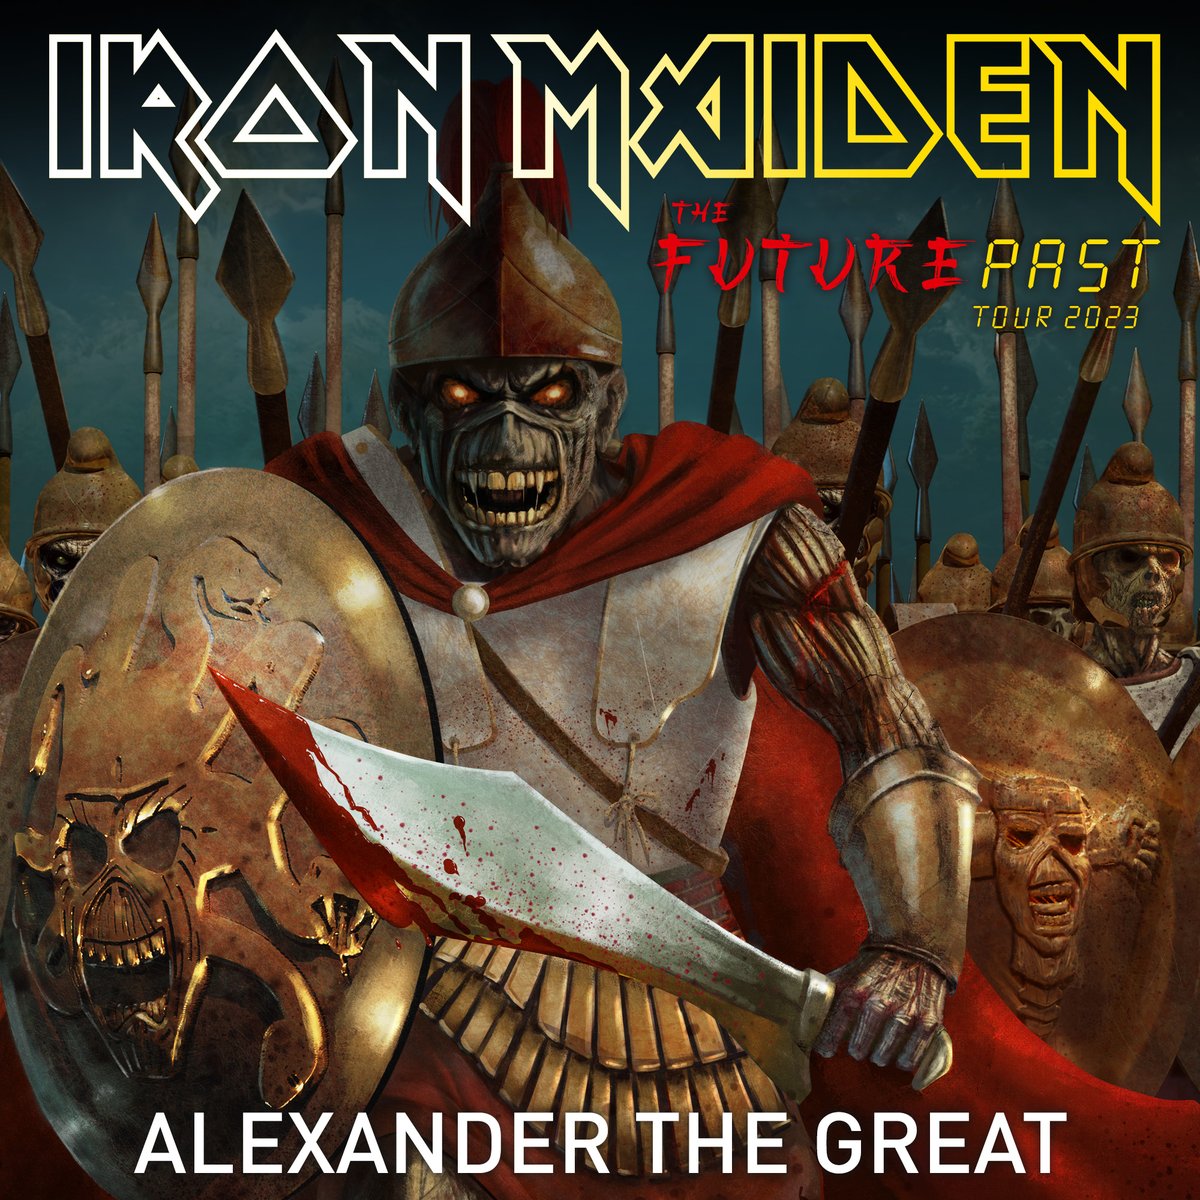 Alexander The Great
#IronMaiden #TheFuturePastTour